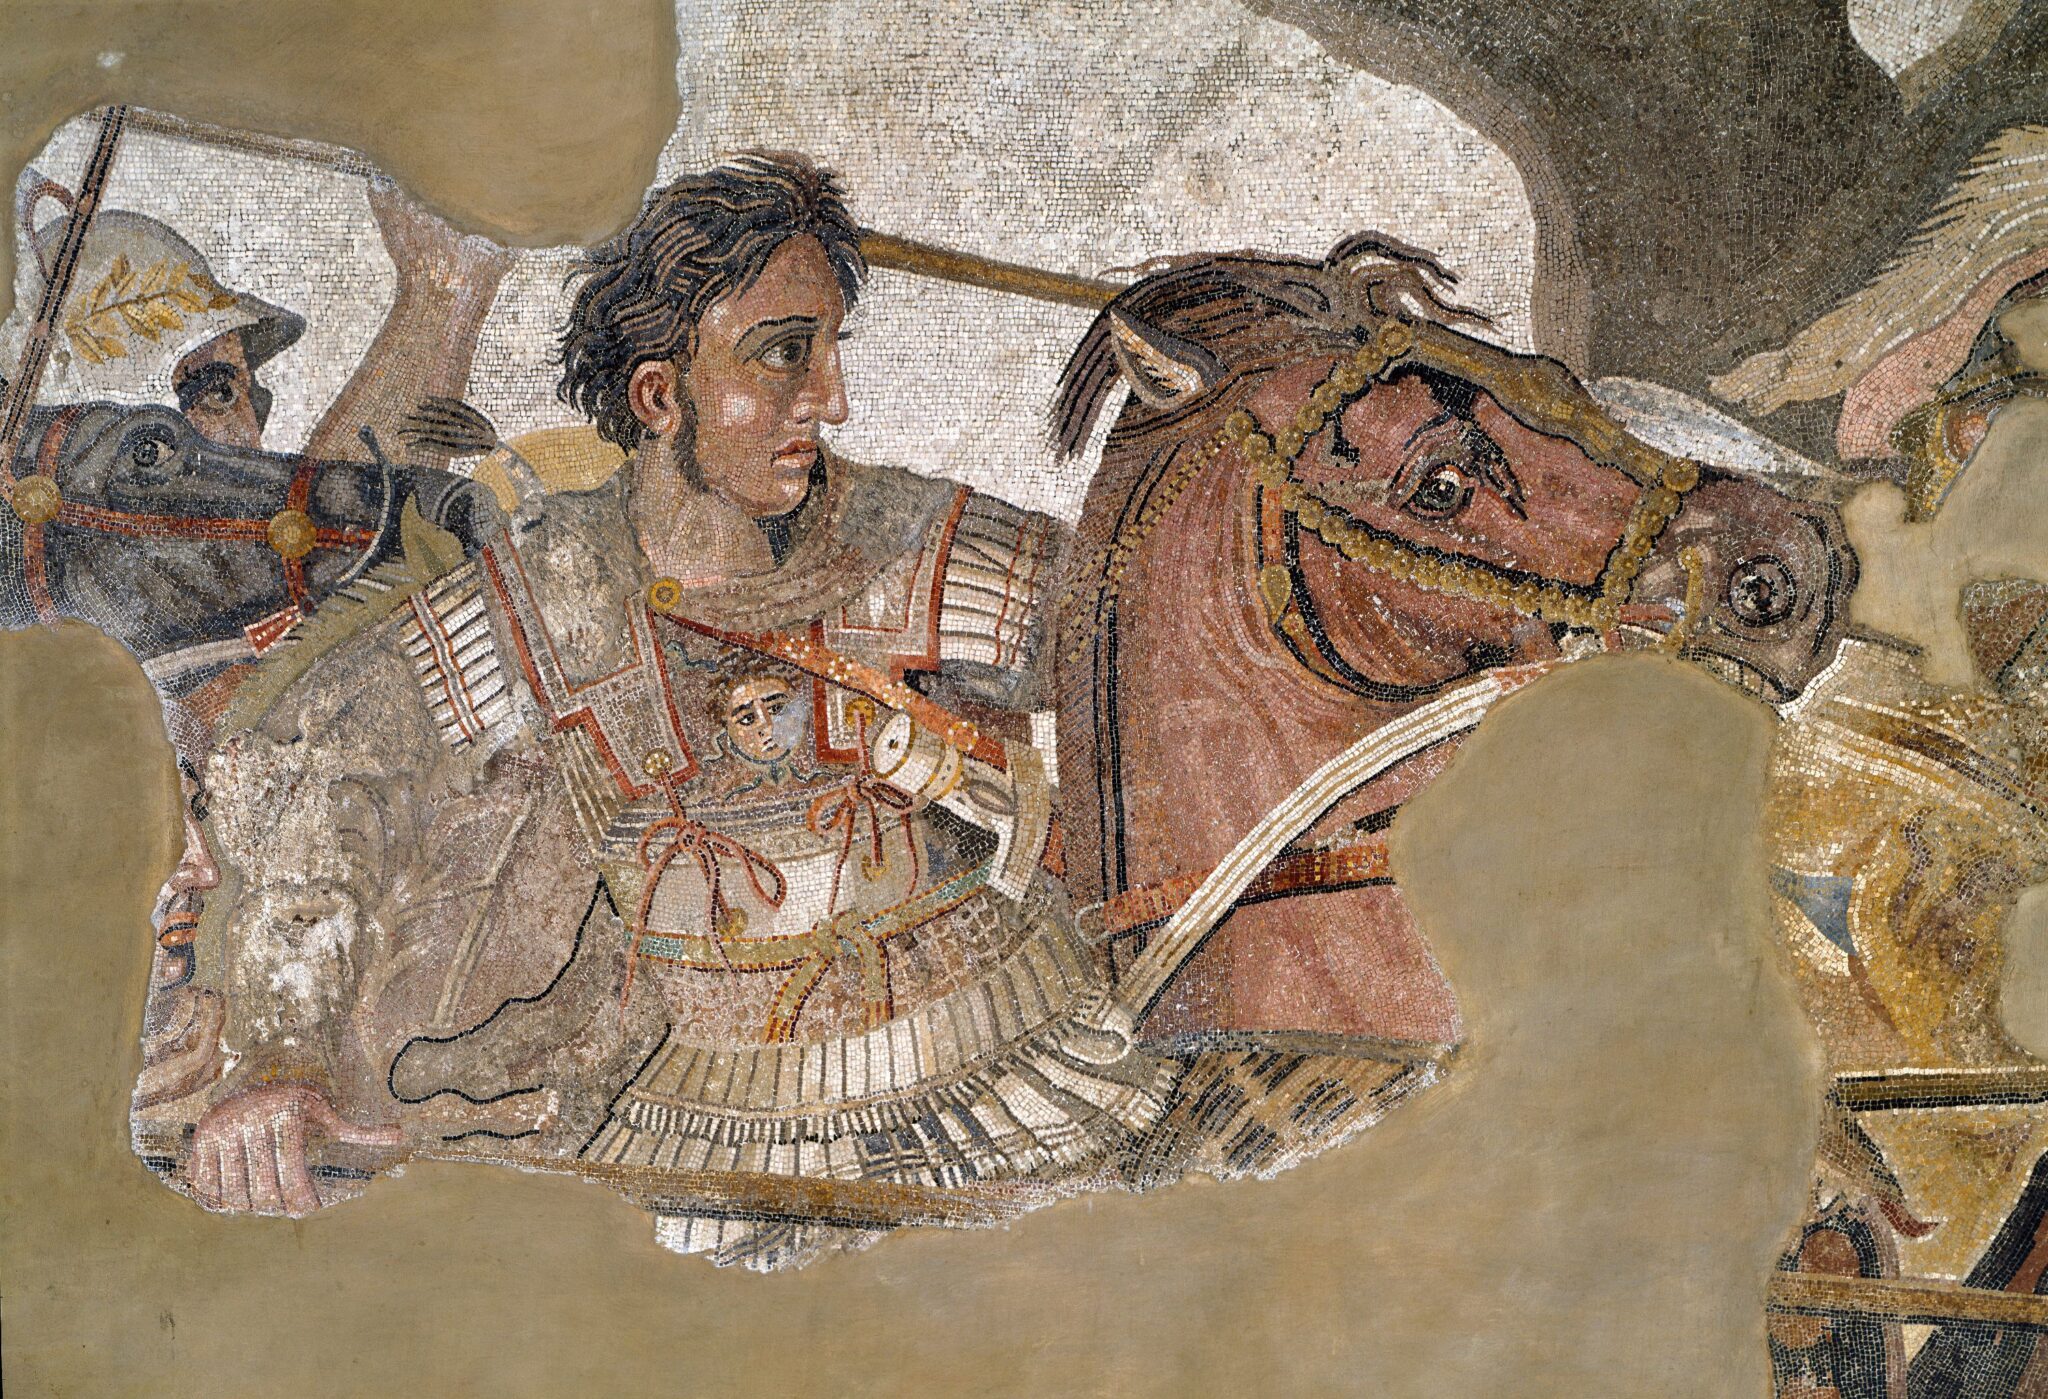 Александр Великий Македонский